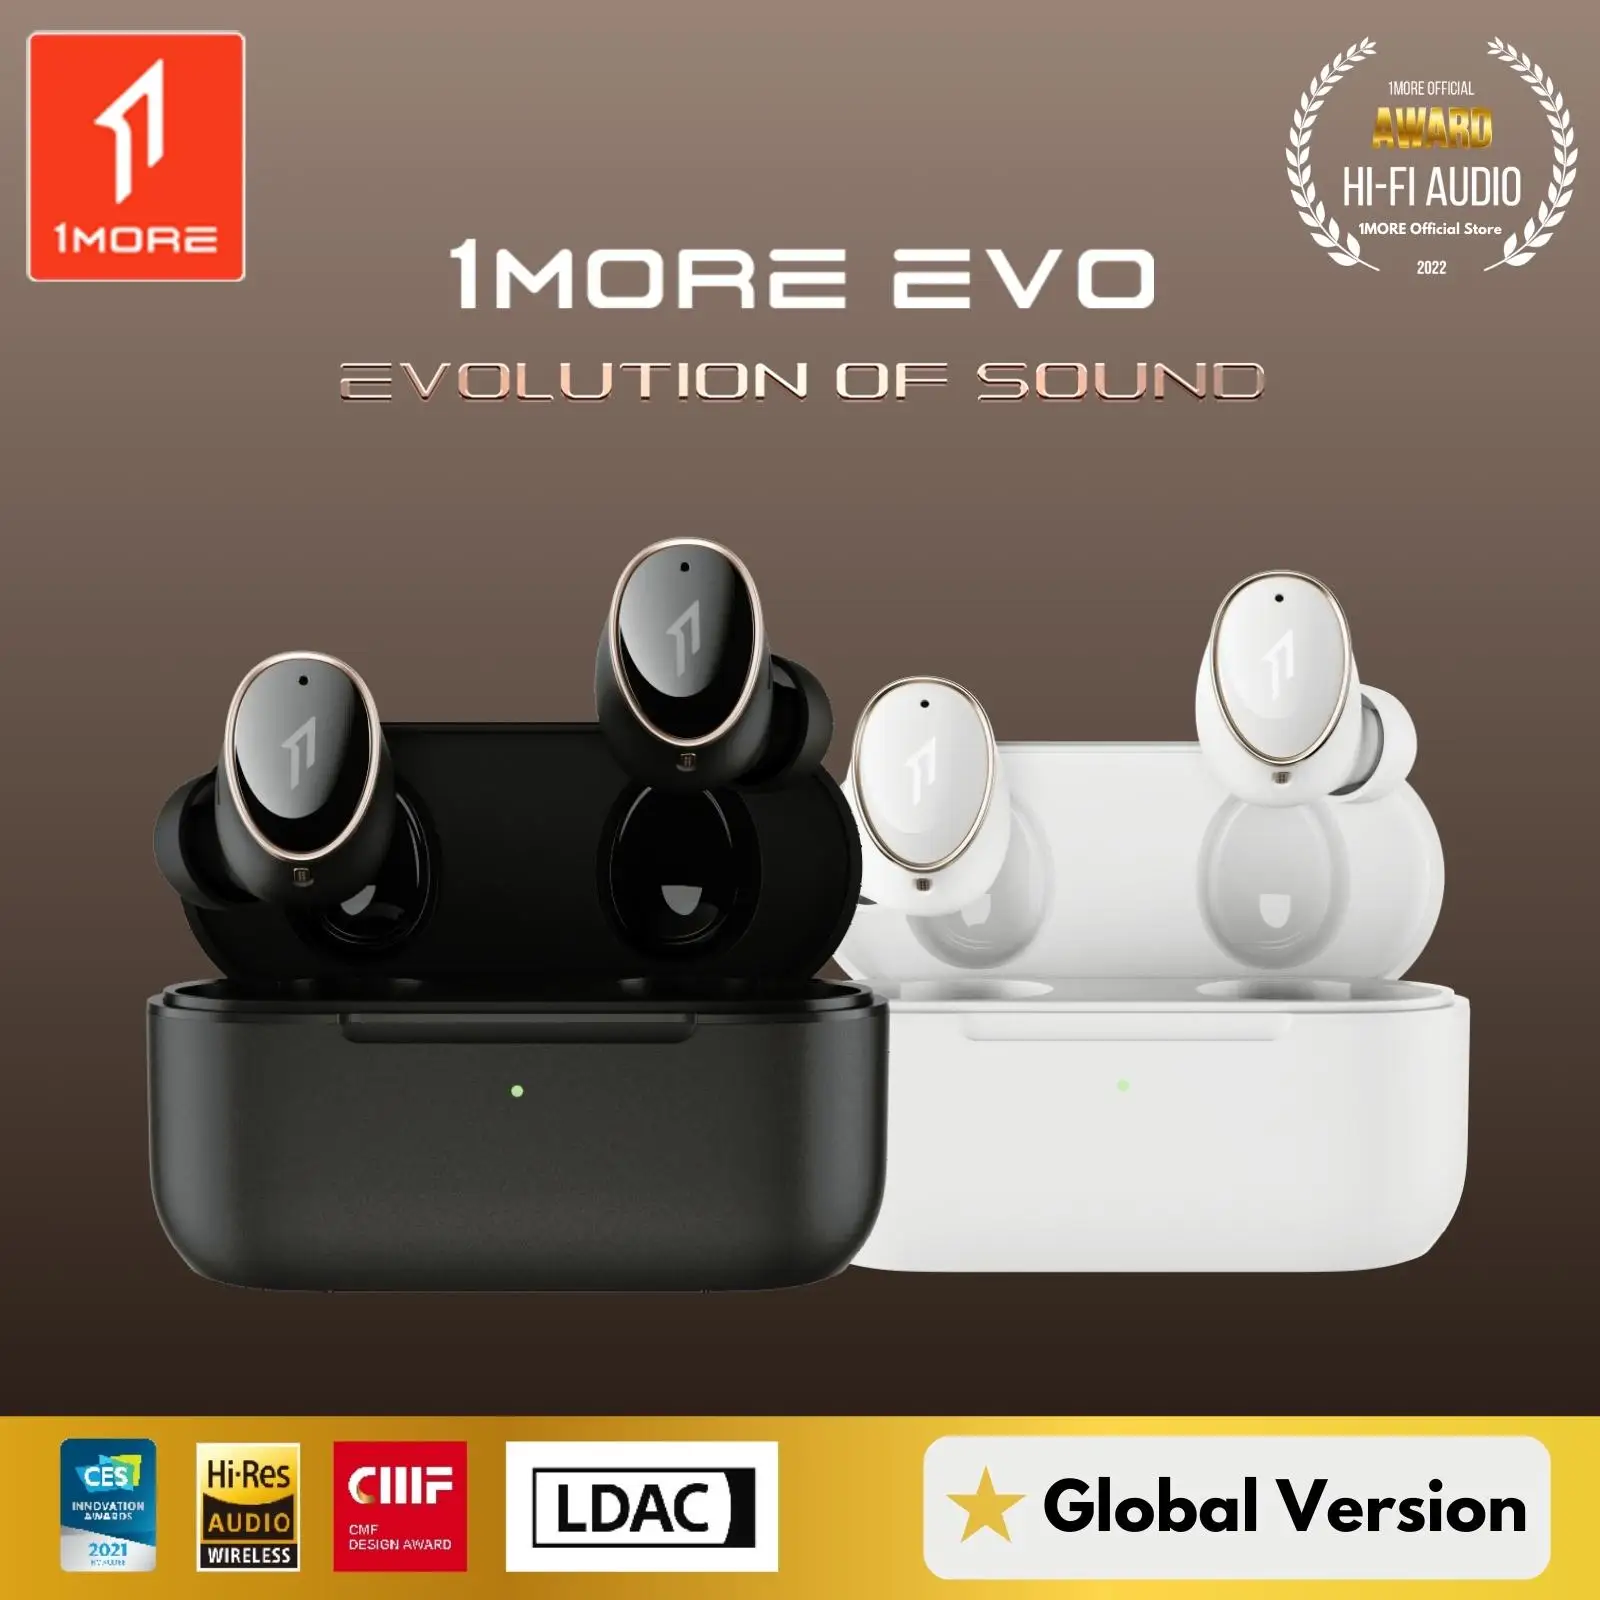 1MORE EVO SoundID 12 música equalizador customn eq fones de ouvido anc sem fio conectar a 2 dispositivos controle app